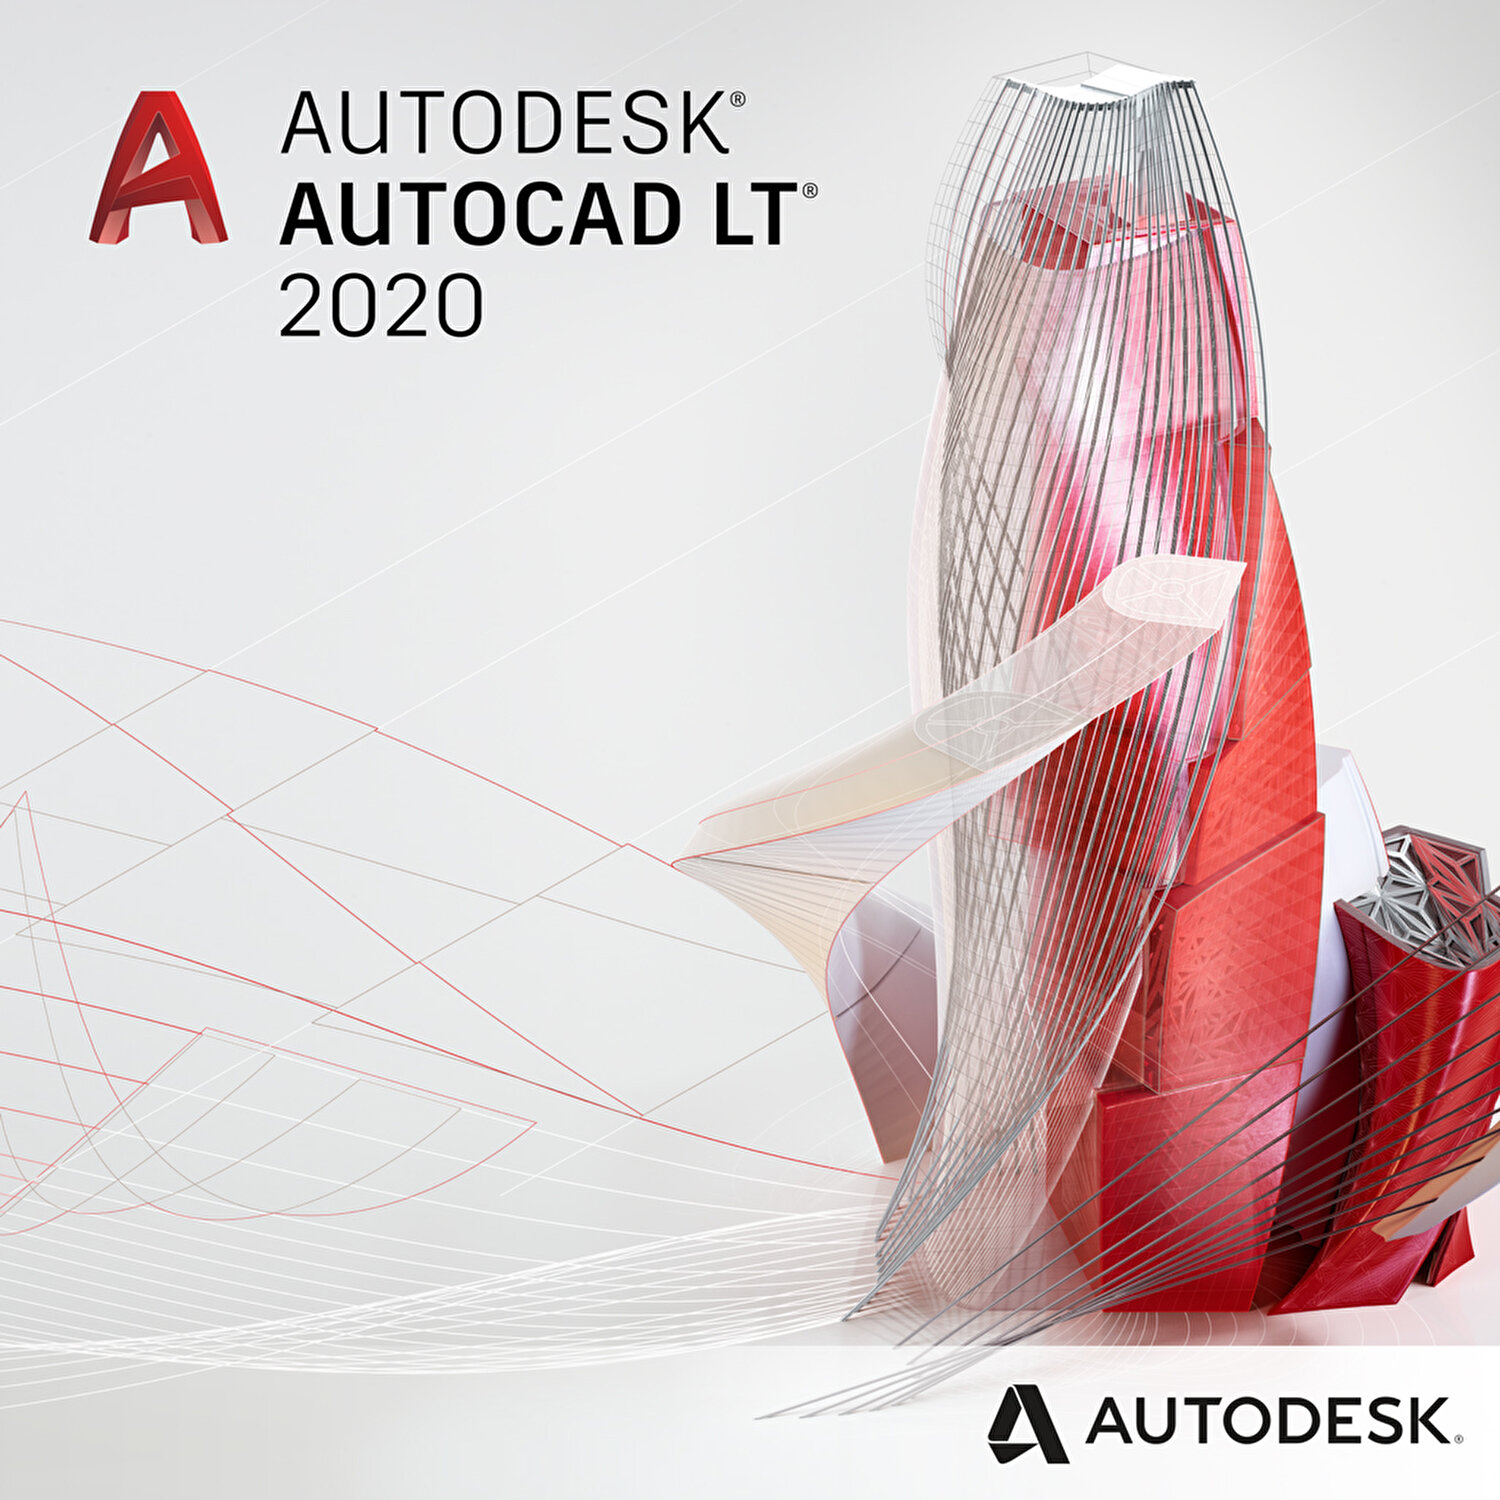 Autodesk Autocad Lt 3 Yillik Abonelik Lisansi Fiyati